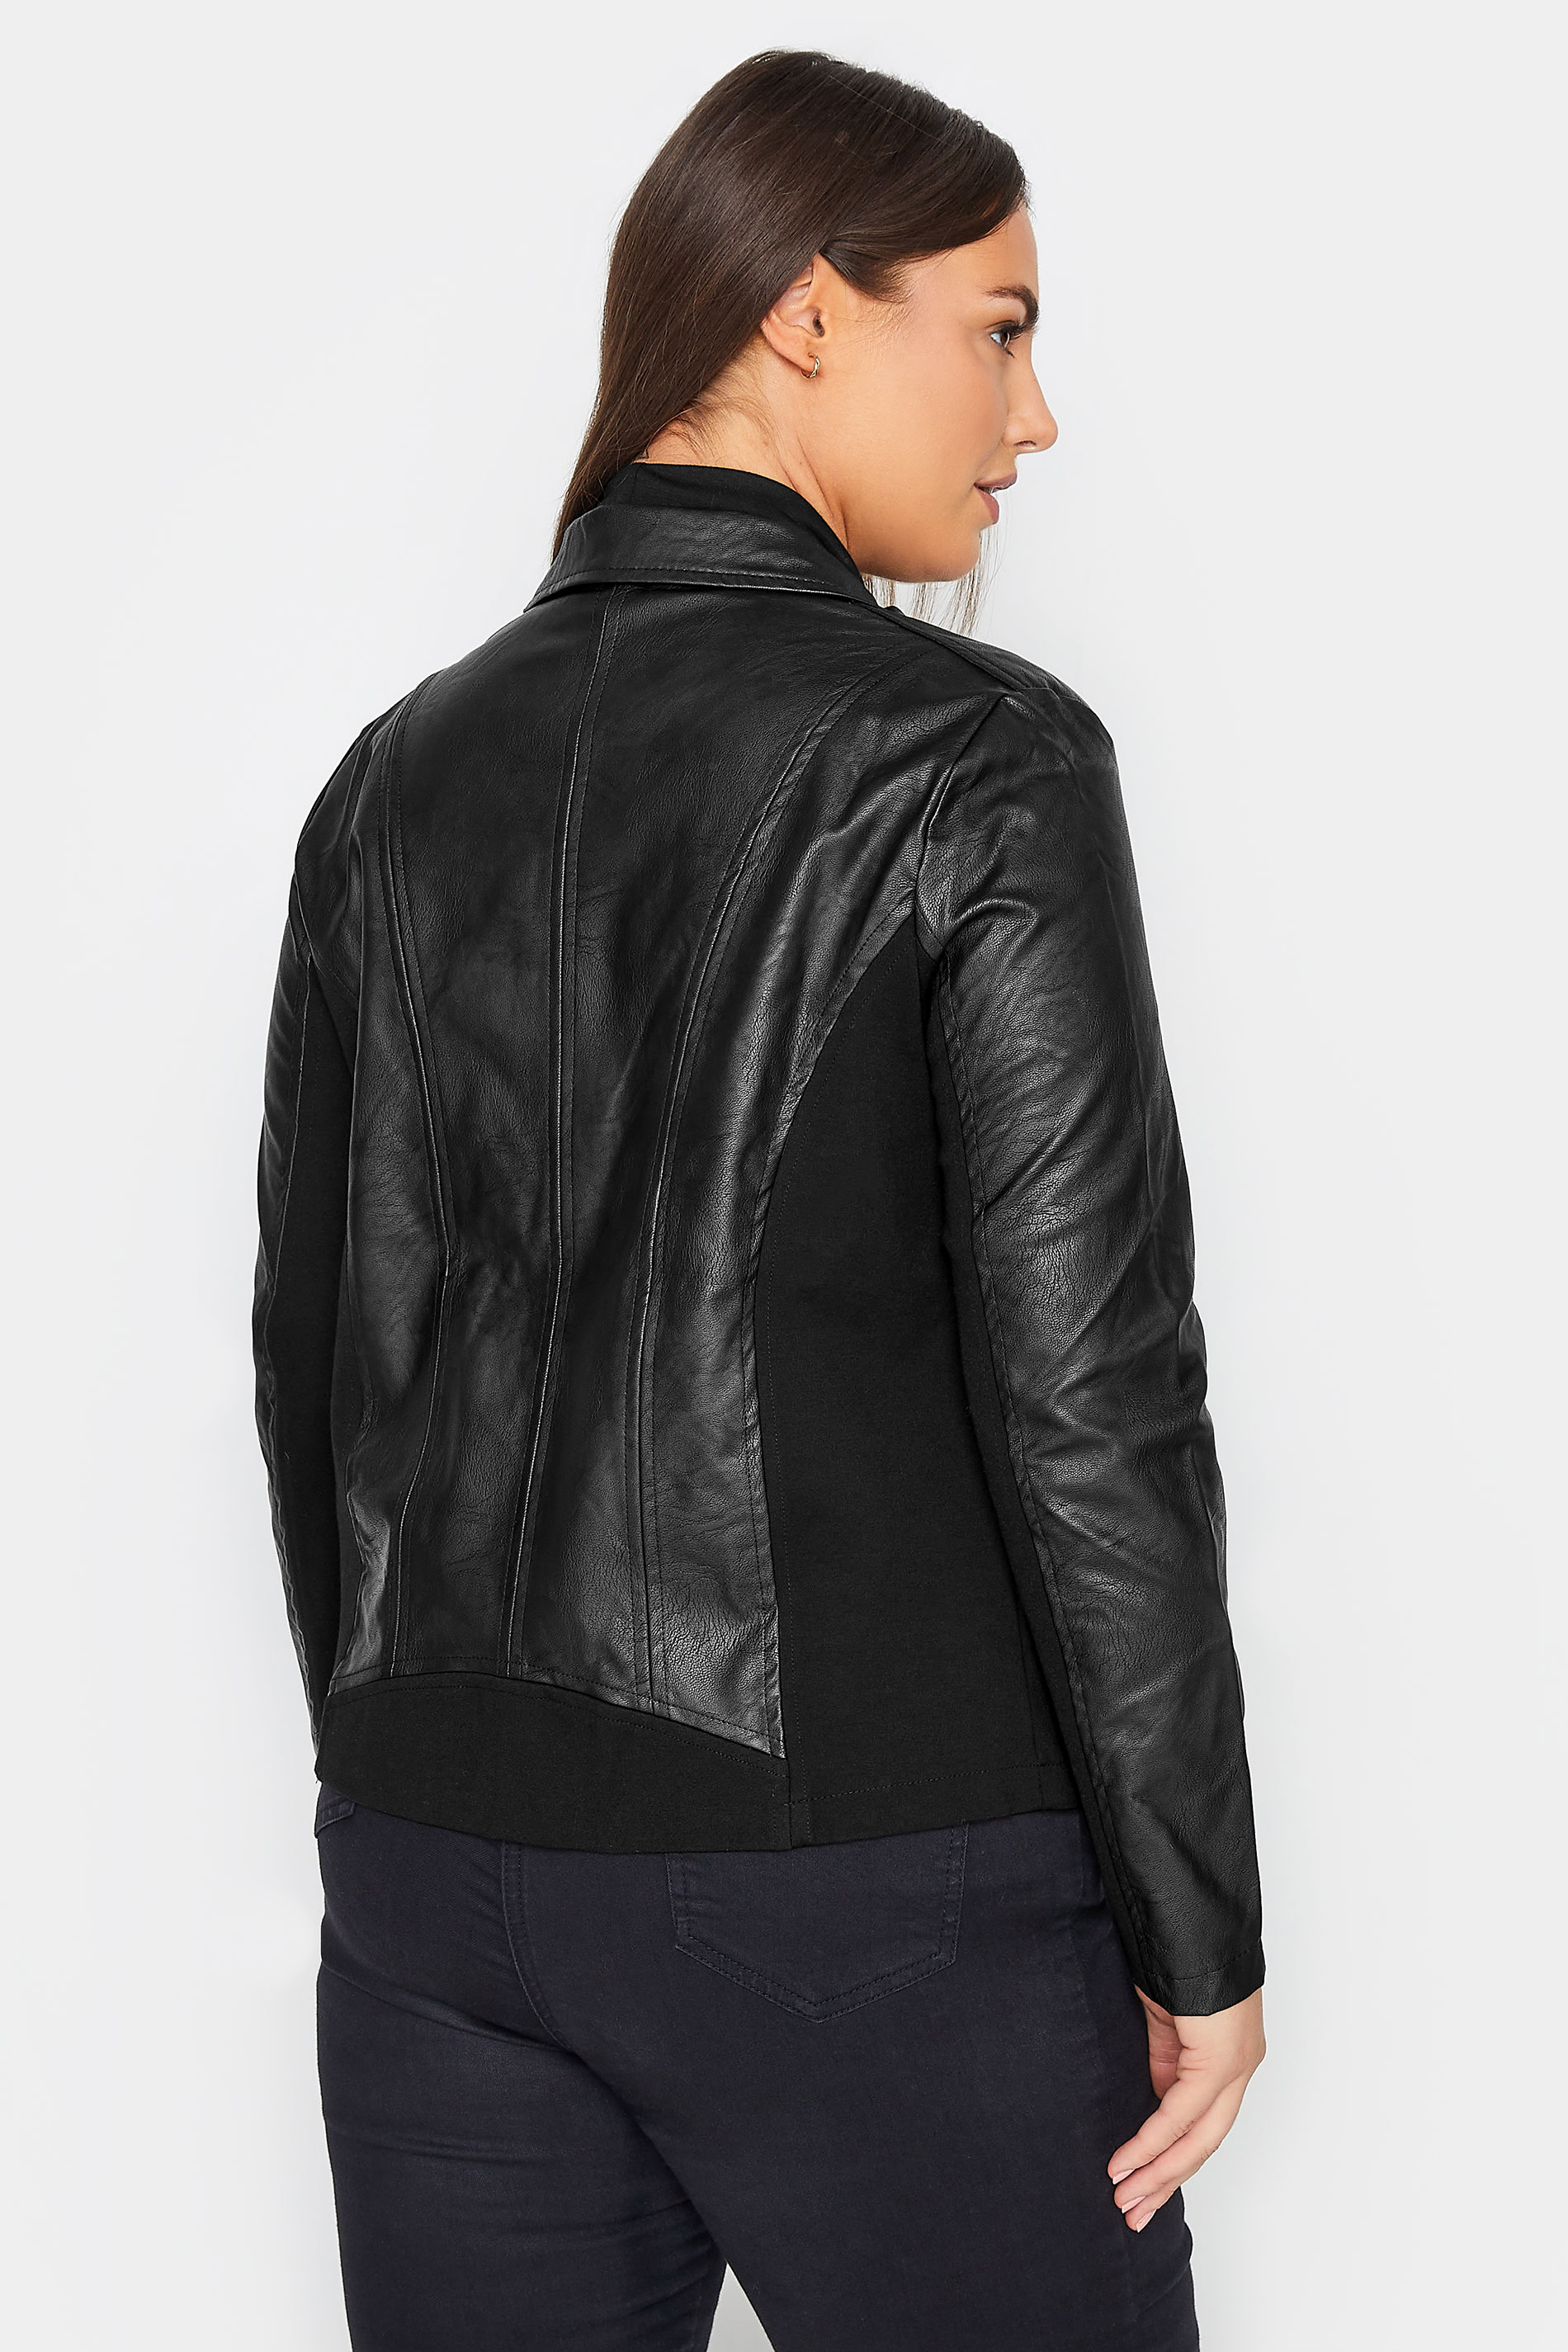 Manon Baptiste Black Embellished Faux Leather Jacket 3